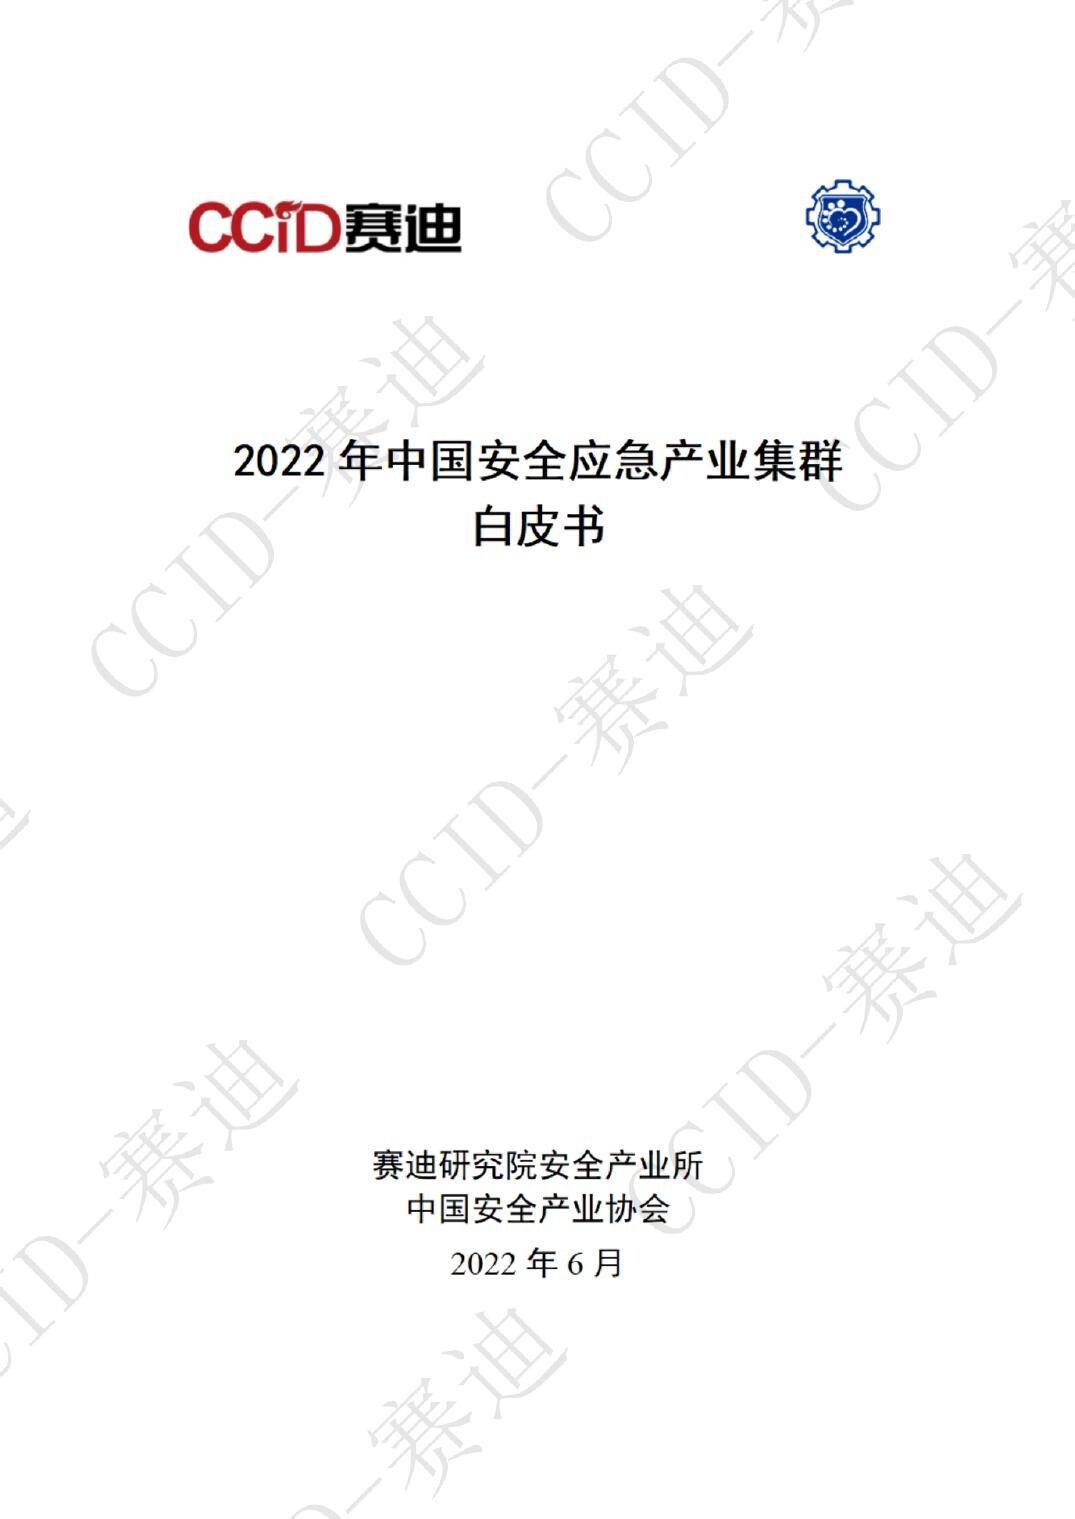 2022年中国安全应急产业集群白皮书-赛迪研究院-2022.6-64页